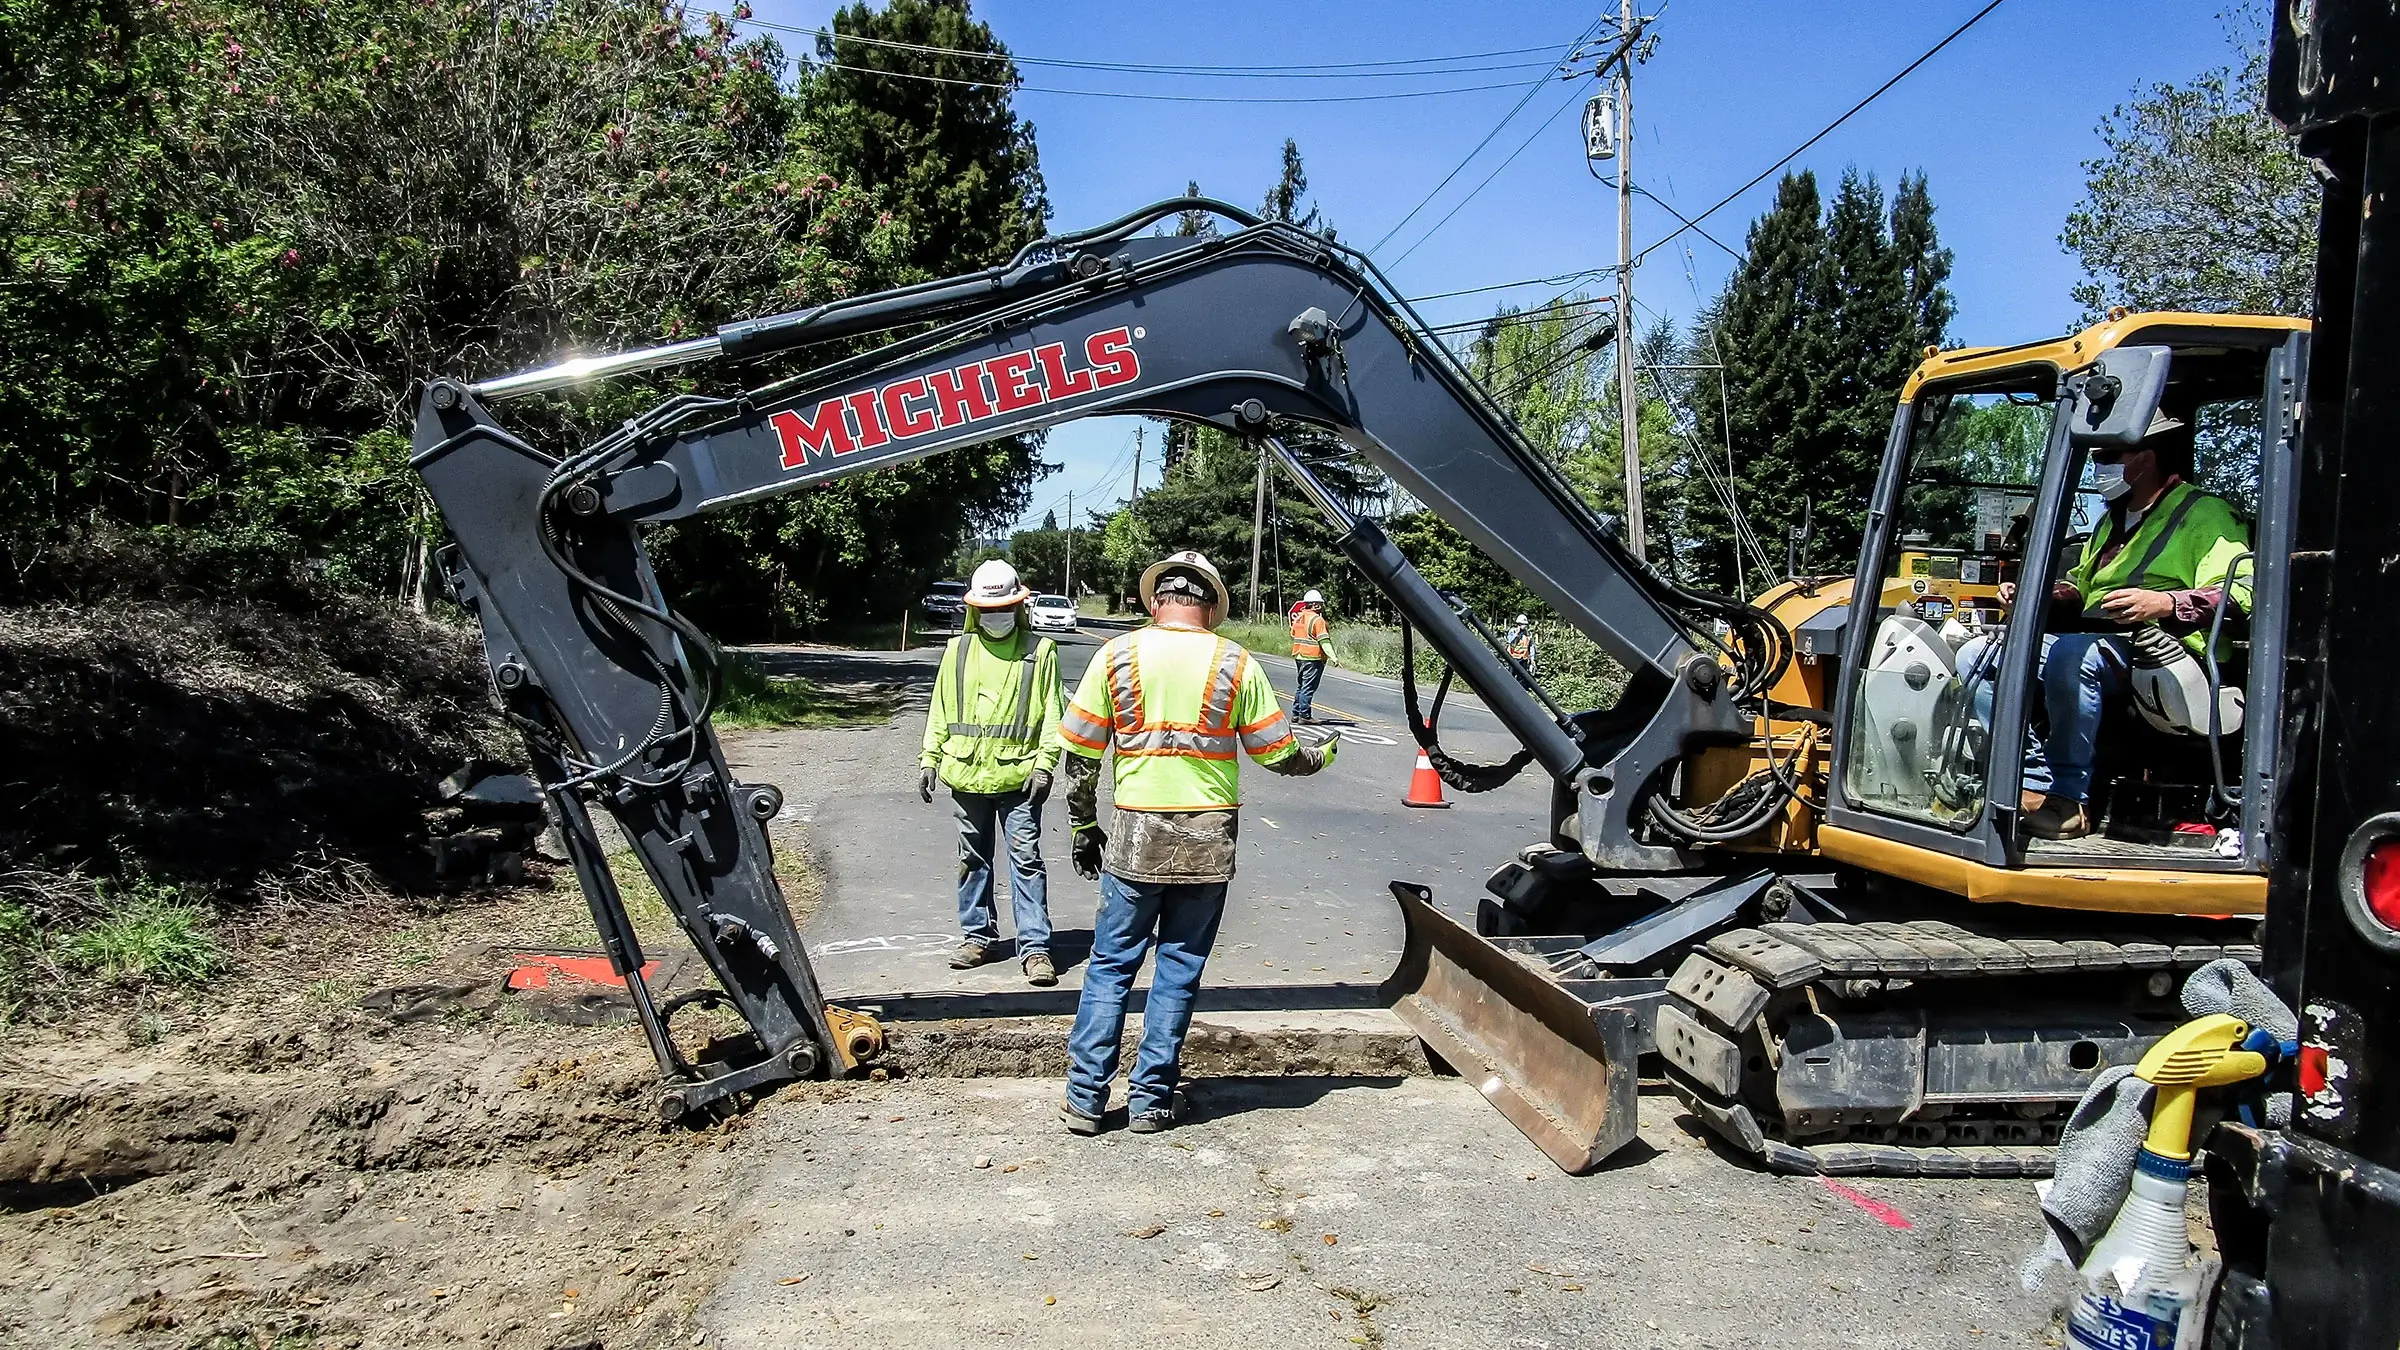 Workers overlook as excavator prepares hole at jobsite